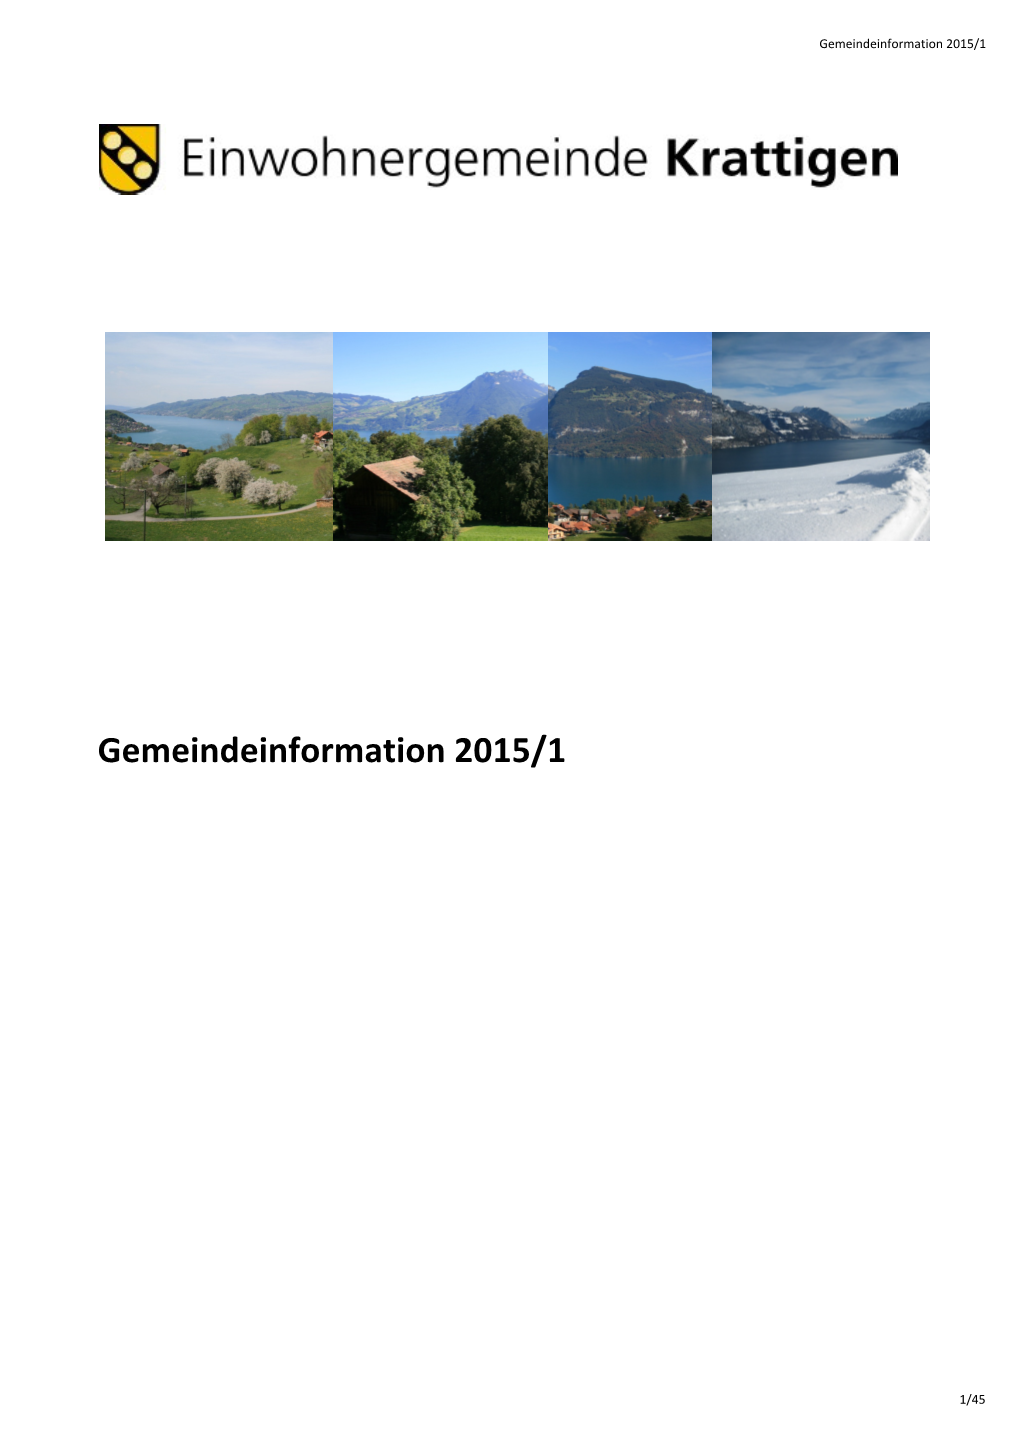 20150601 Gemeindeinfo 2015,1 Homepage